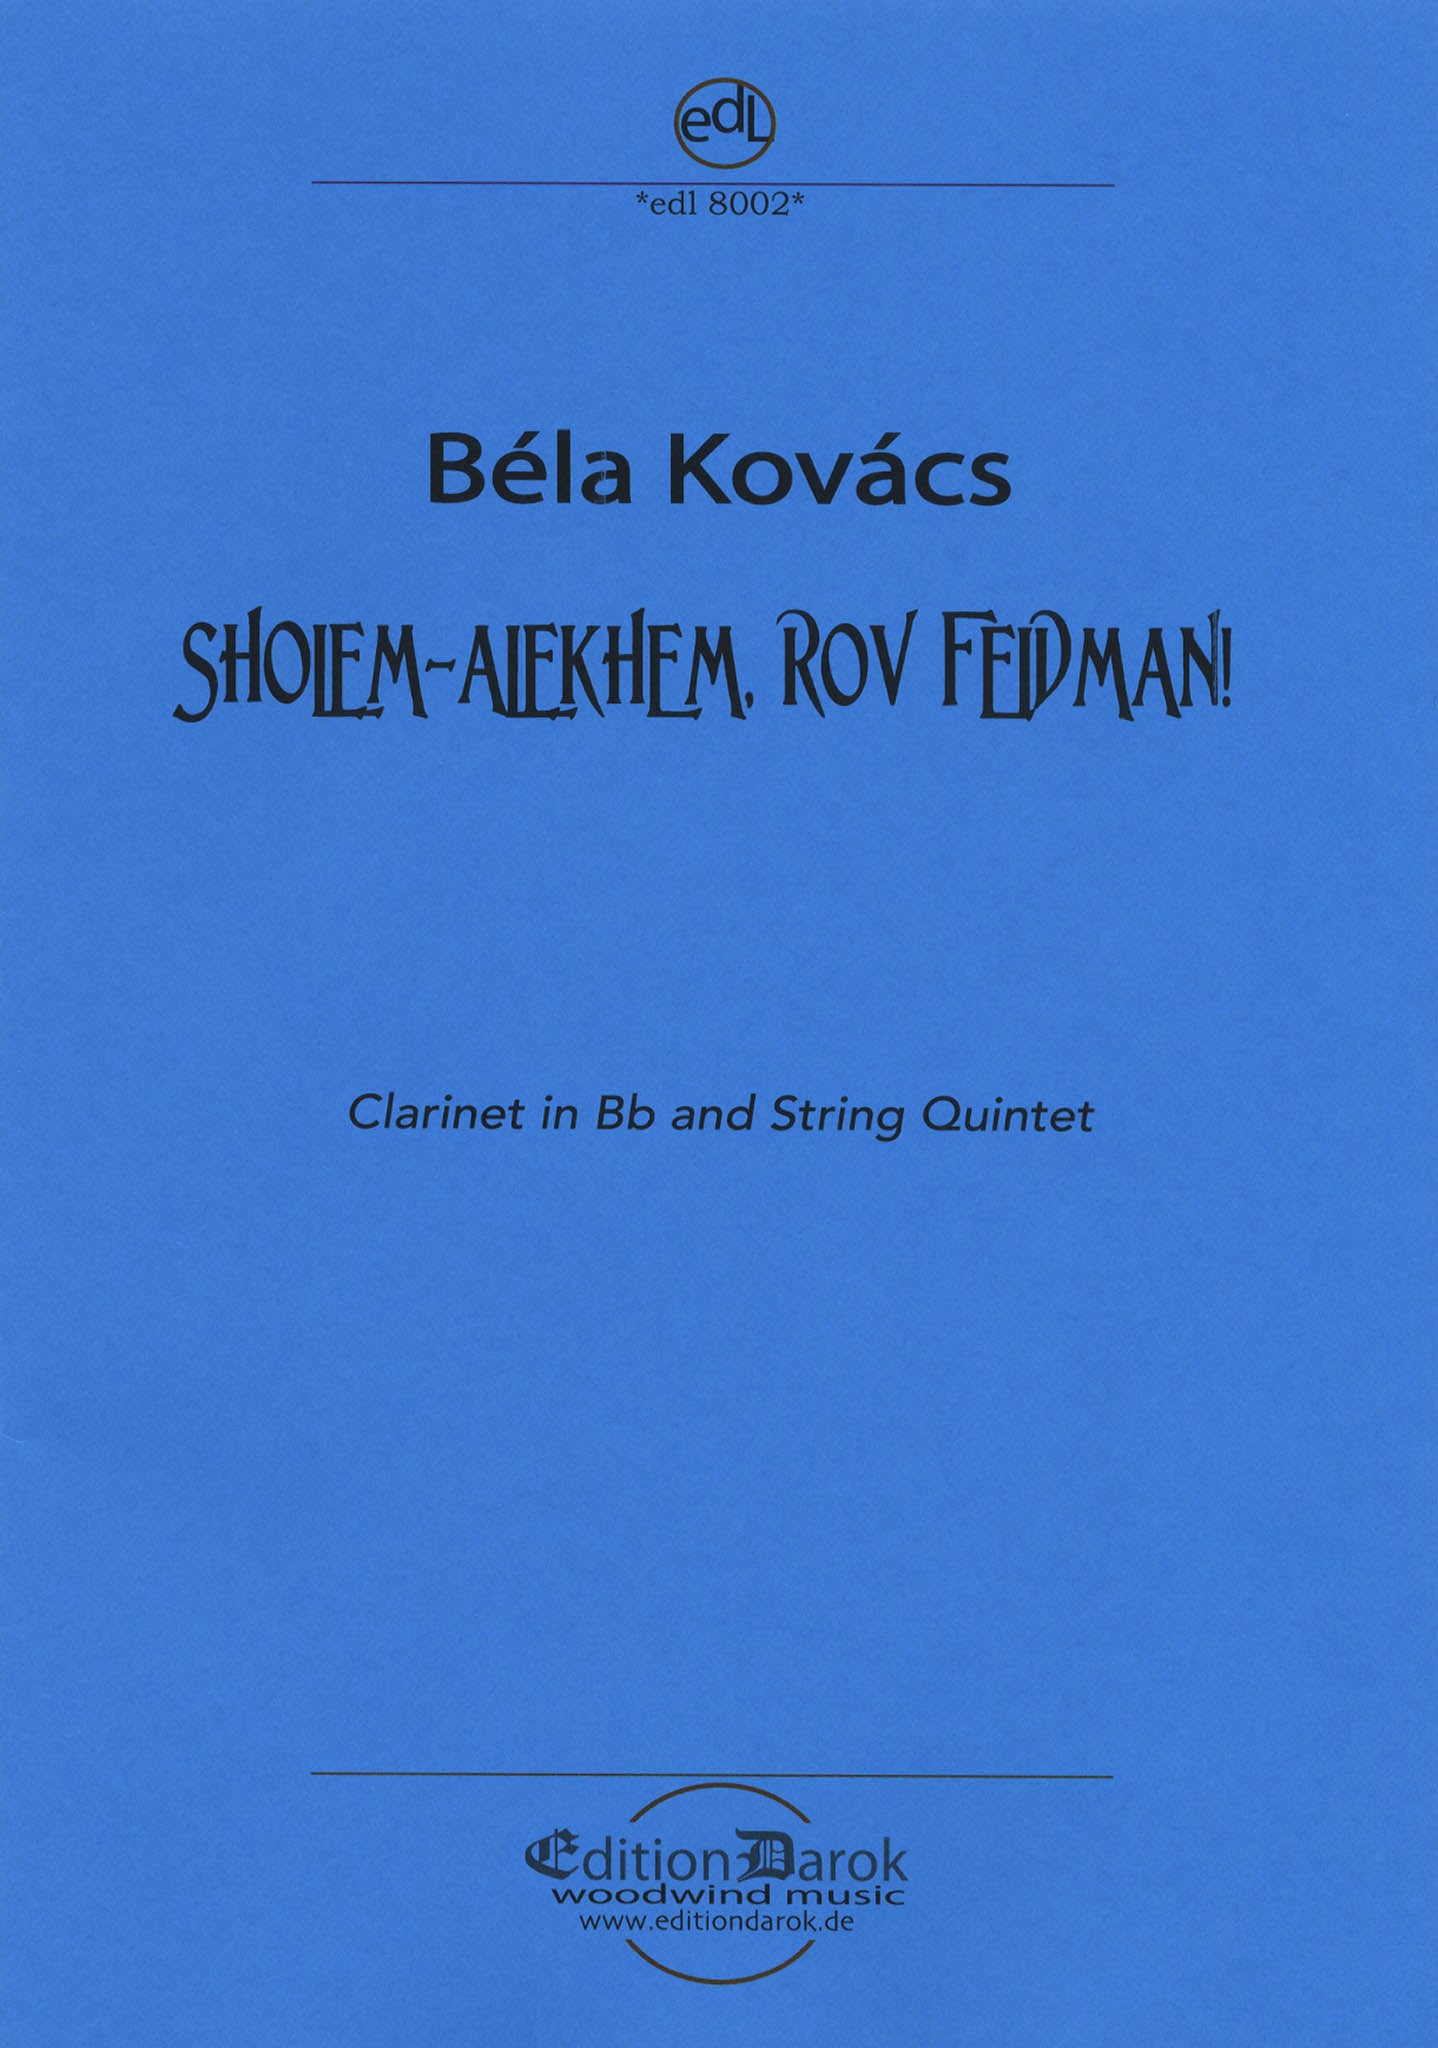 Kovács Sholem-Alekhem, rov Feidman! Cover